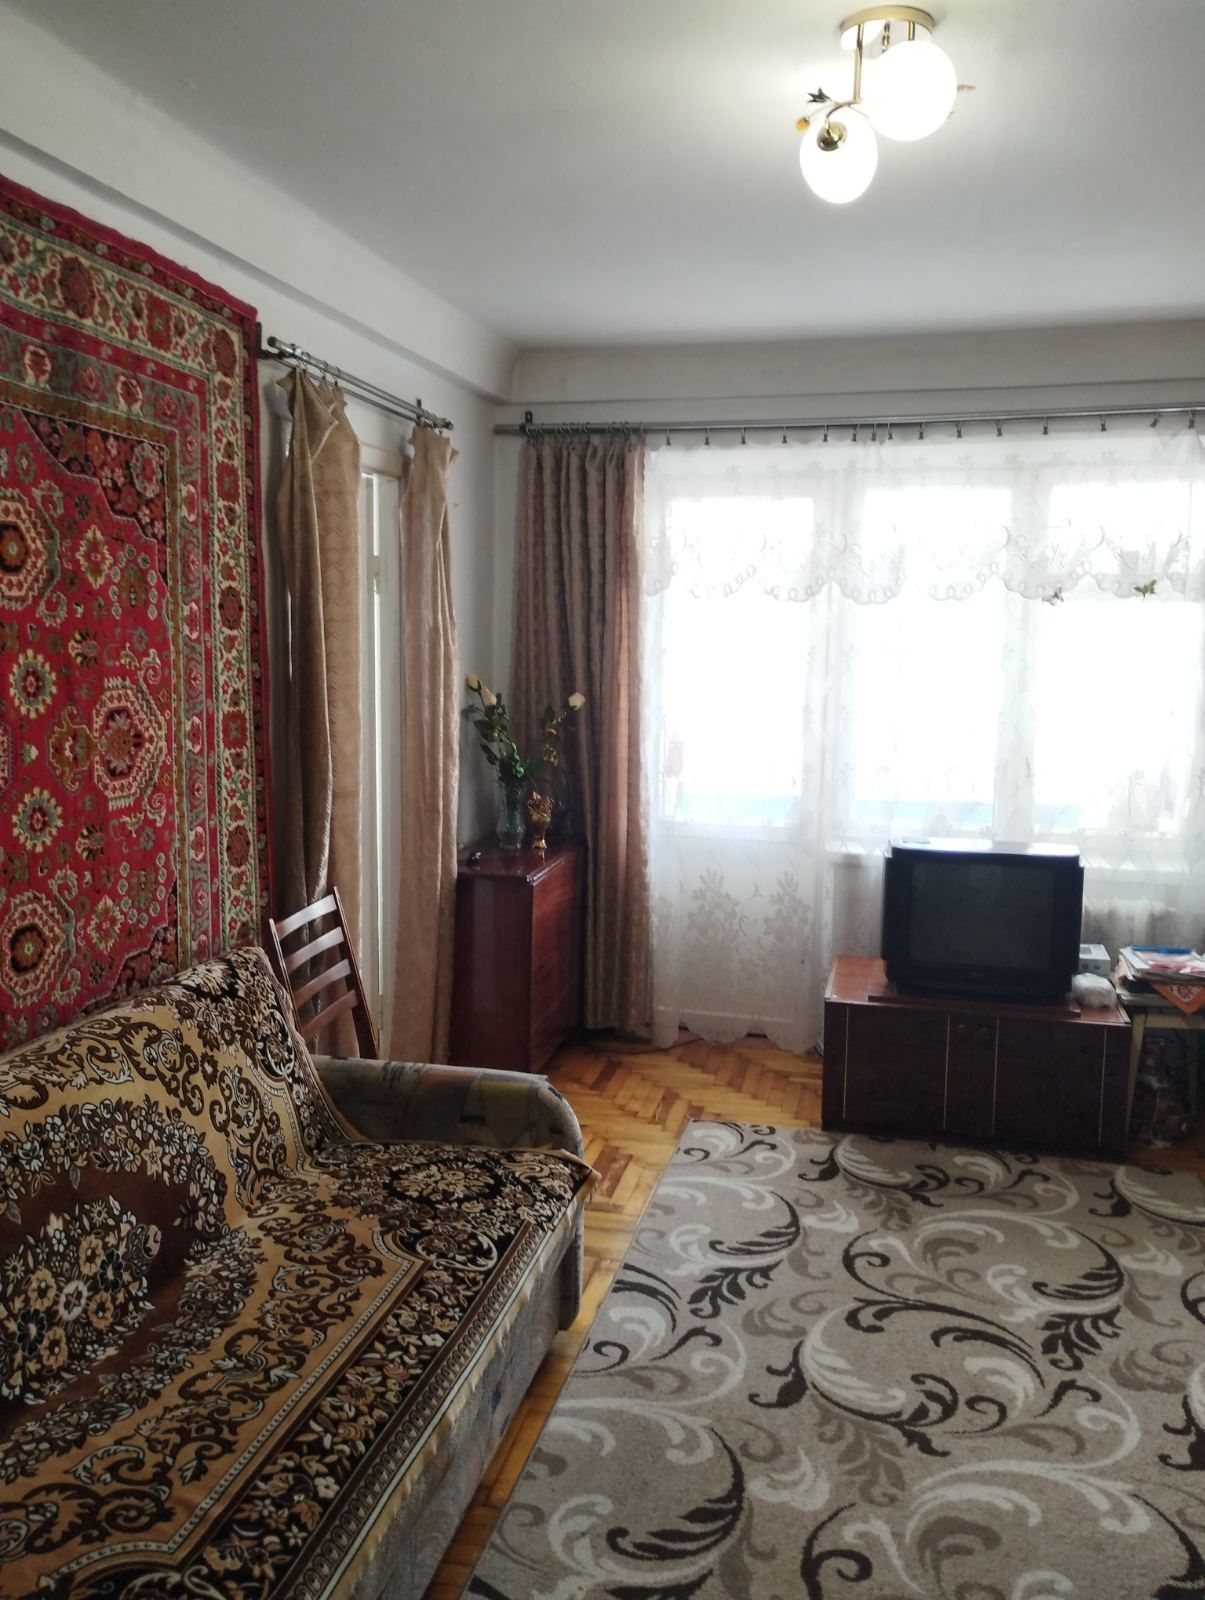 Продам трёхкомнатную квартиру в Шевченковском районе